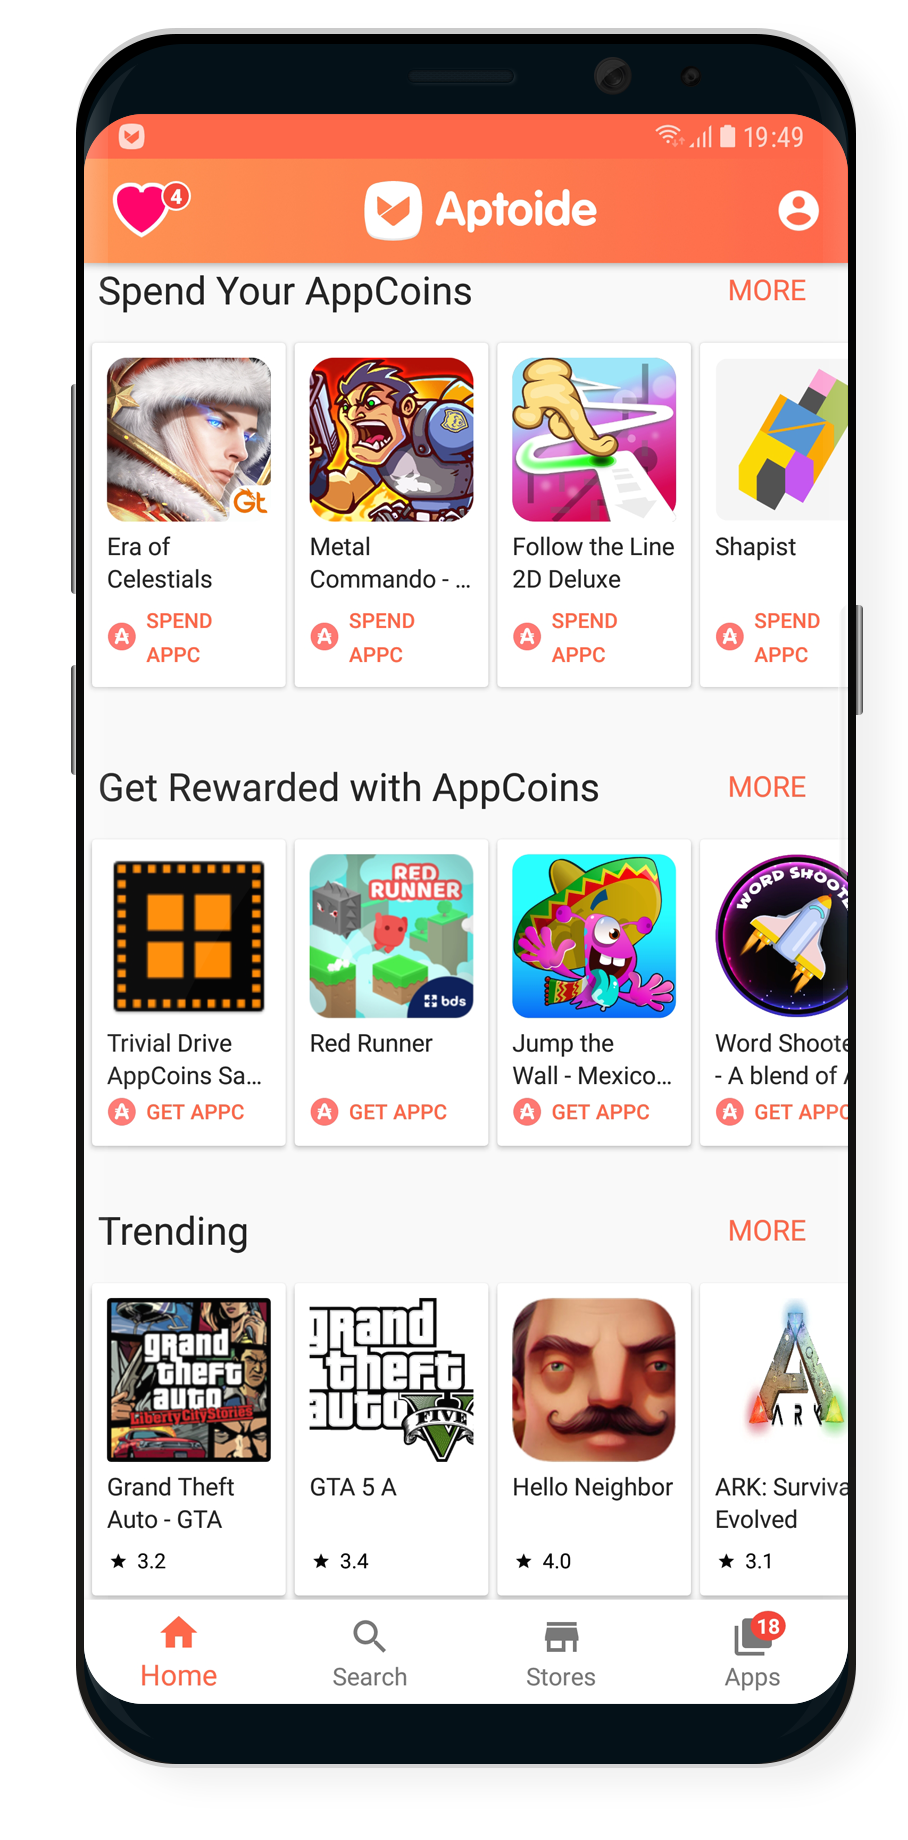 Aptoide - Android App Store v9.9.0.1 [Mod] - ReleaseAPK